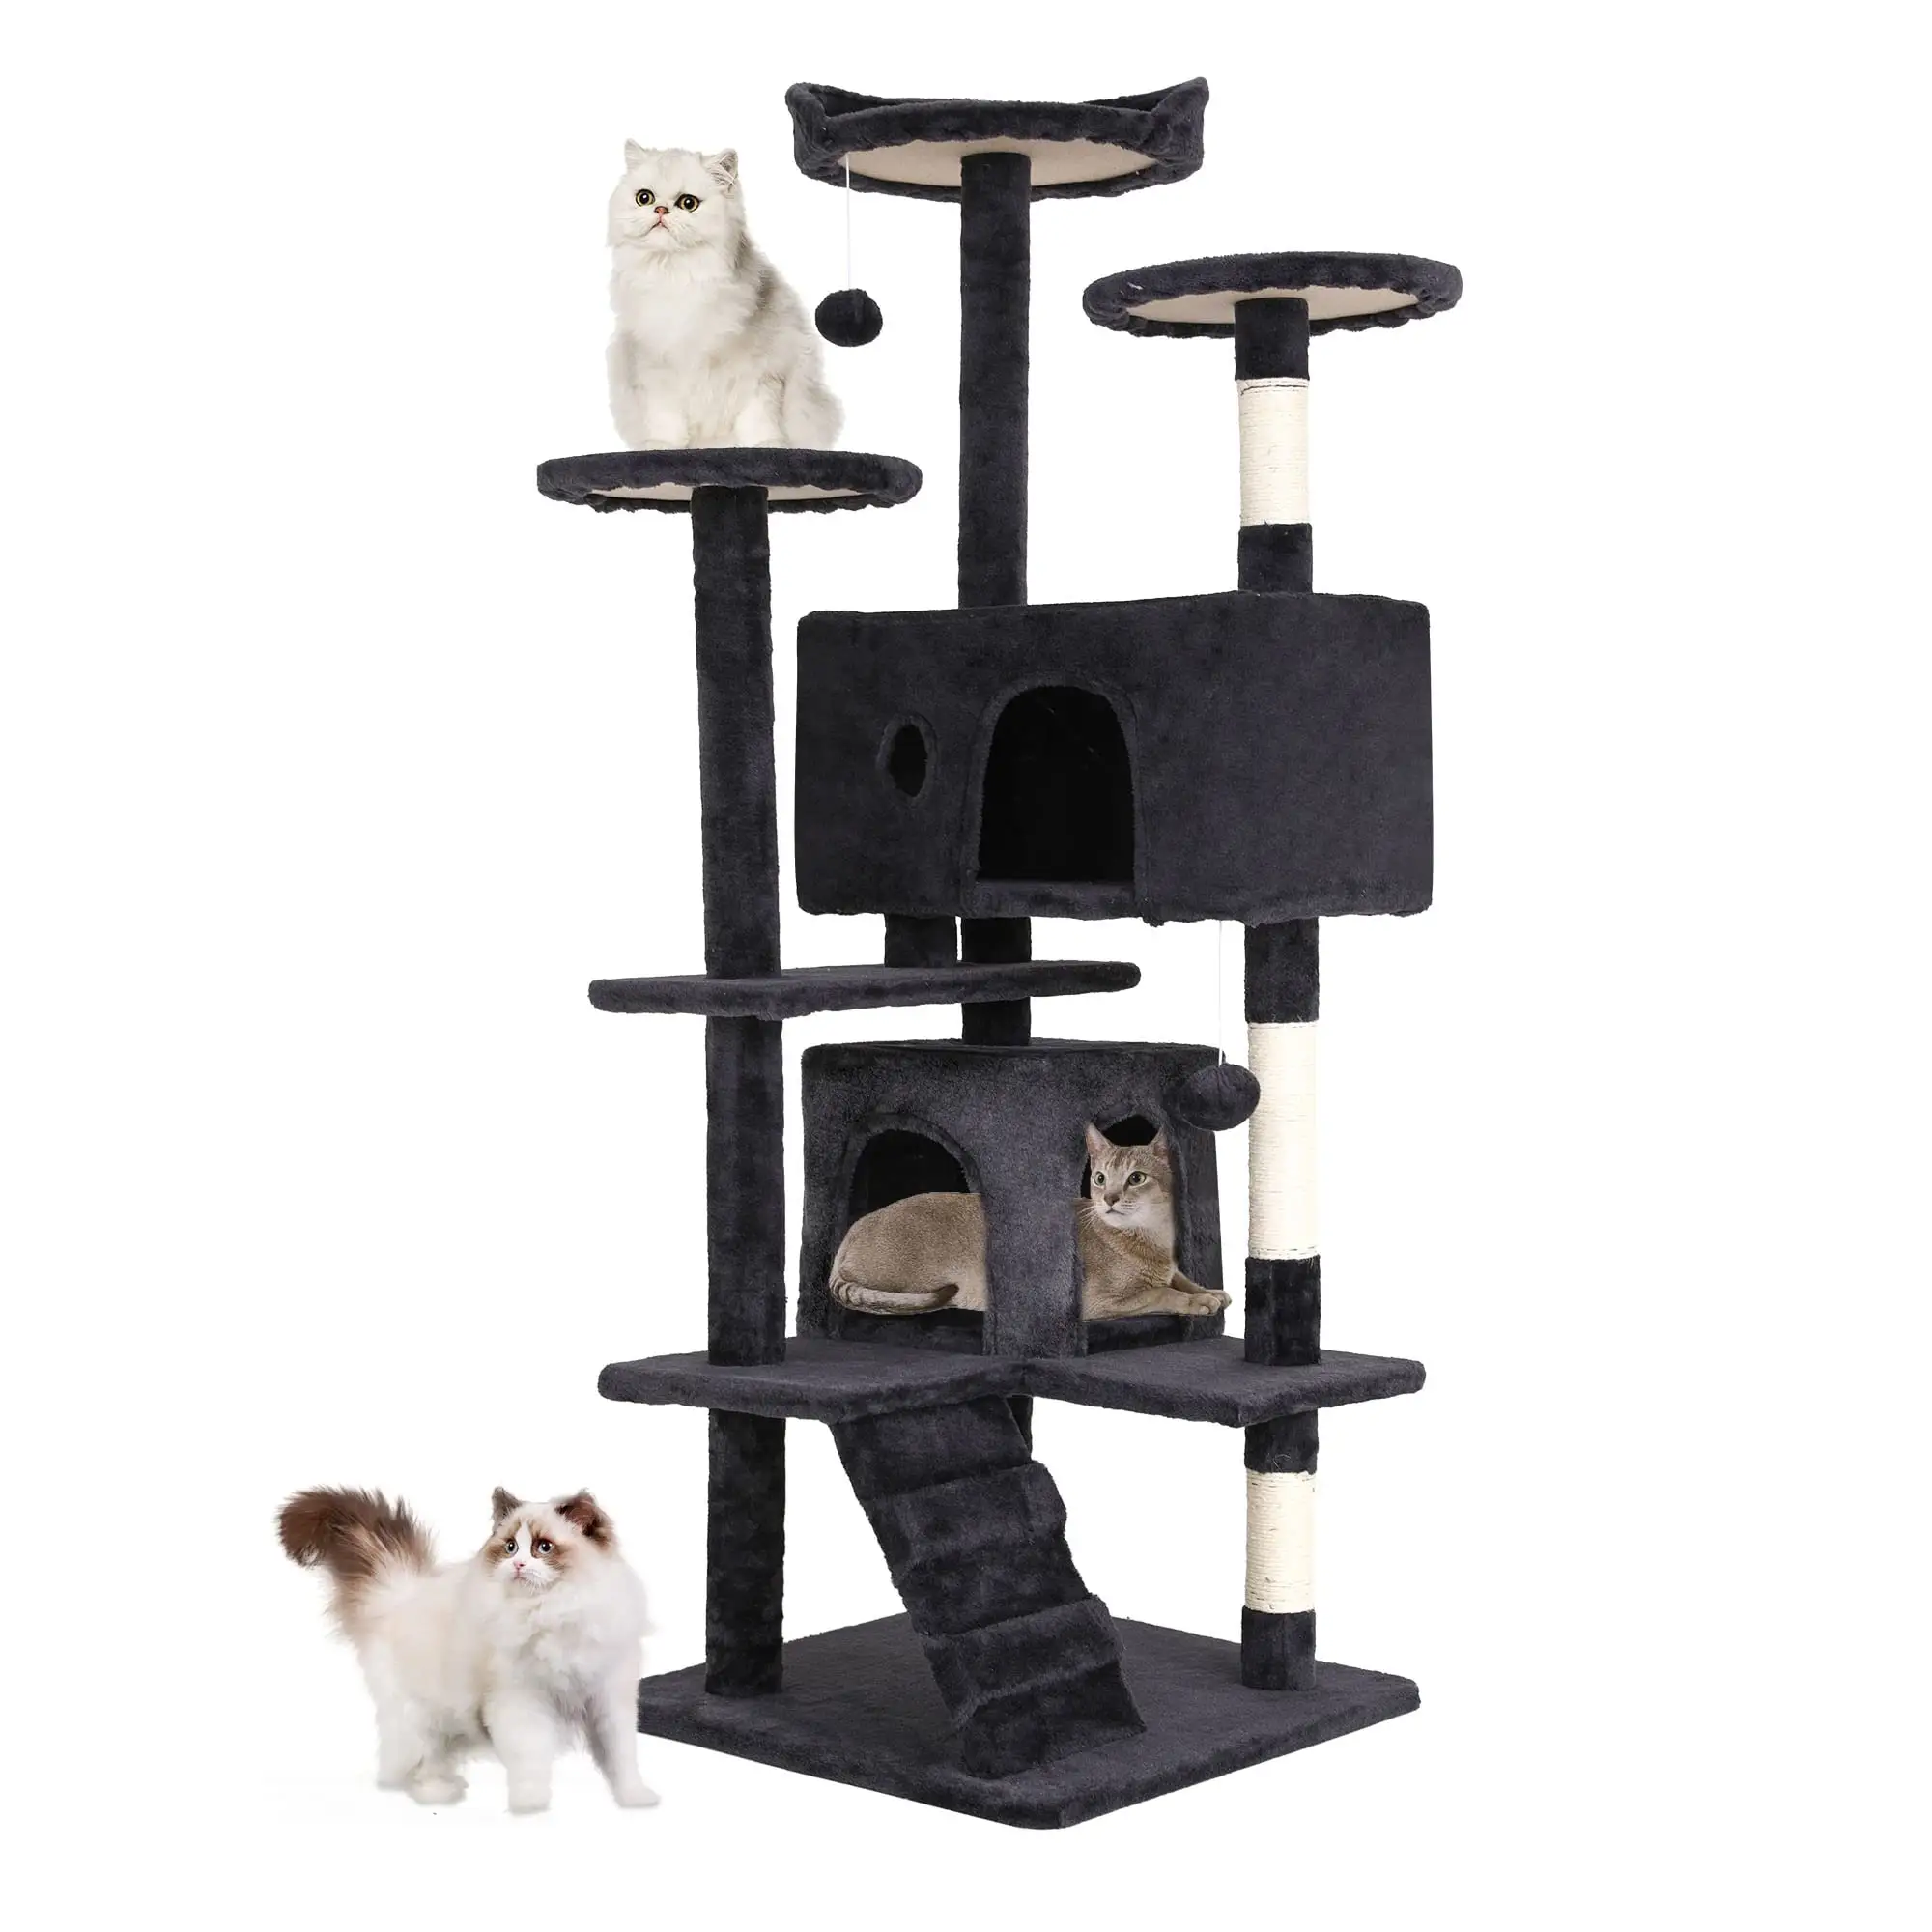 Multi-Level Meubelen Activiteitencentrum Condo Grappige Speelgoed Kittens Pet Play House Cat Tree Tower Voor Indoor Katten